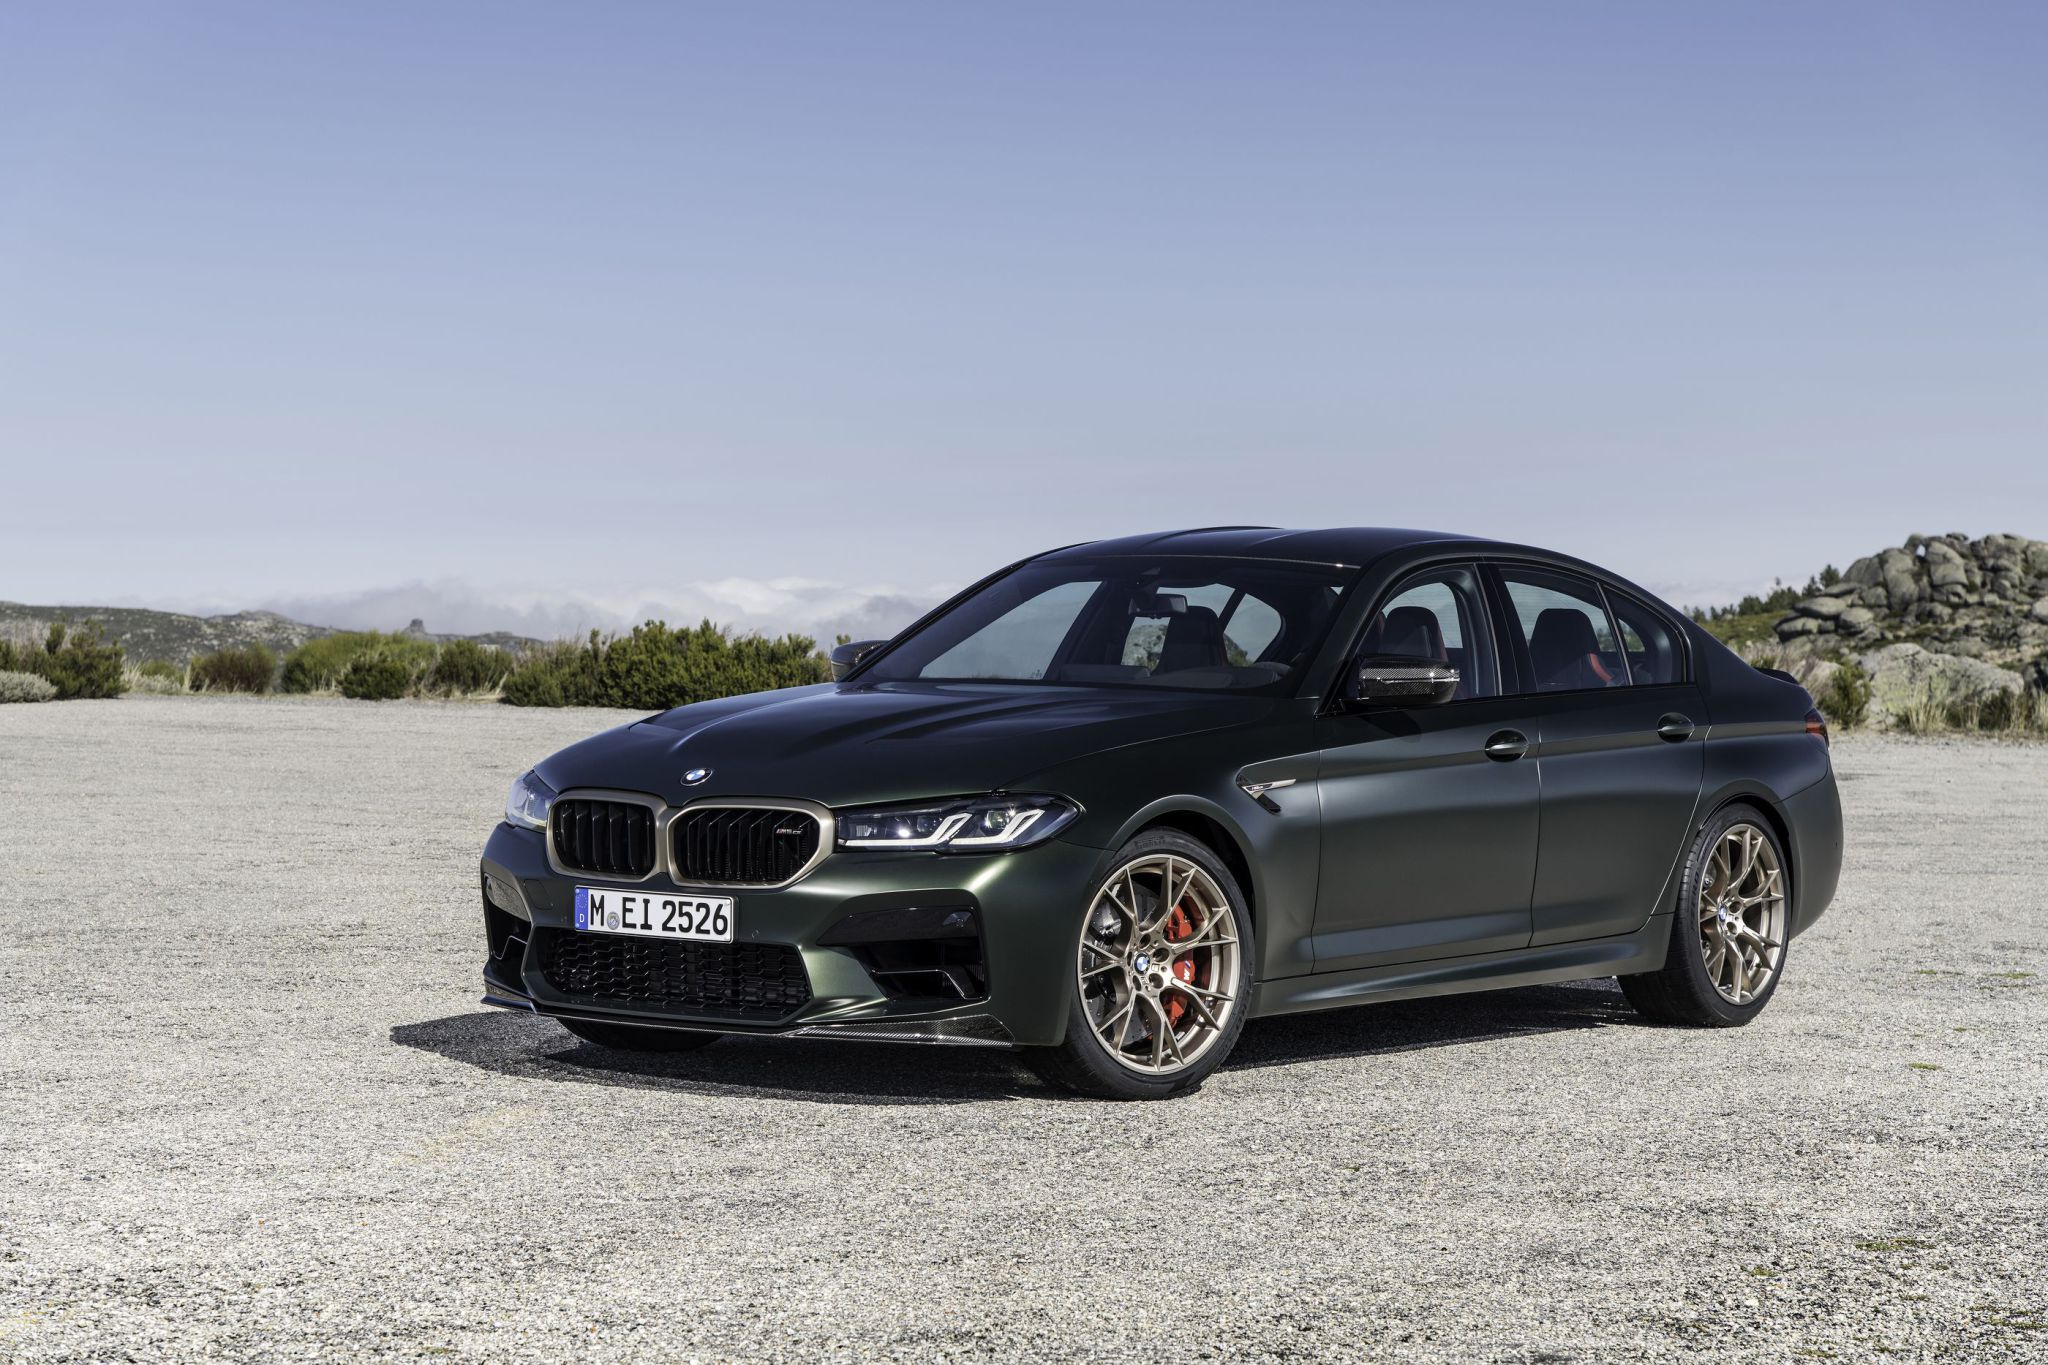 BMW M5 CS - Quoi de neuf pour la plus puissante des BMW M ?